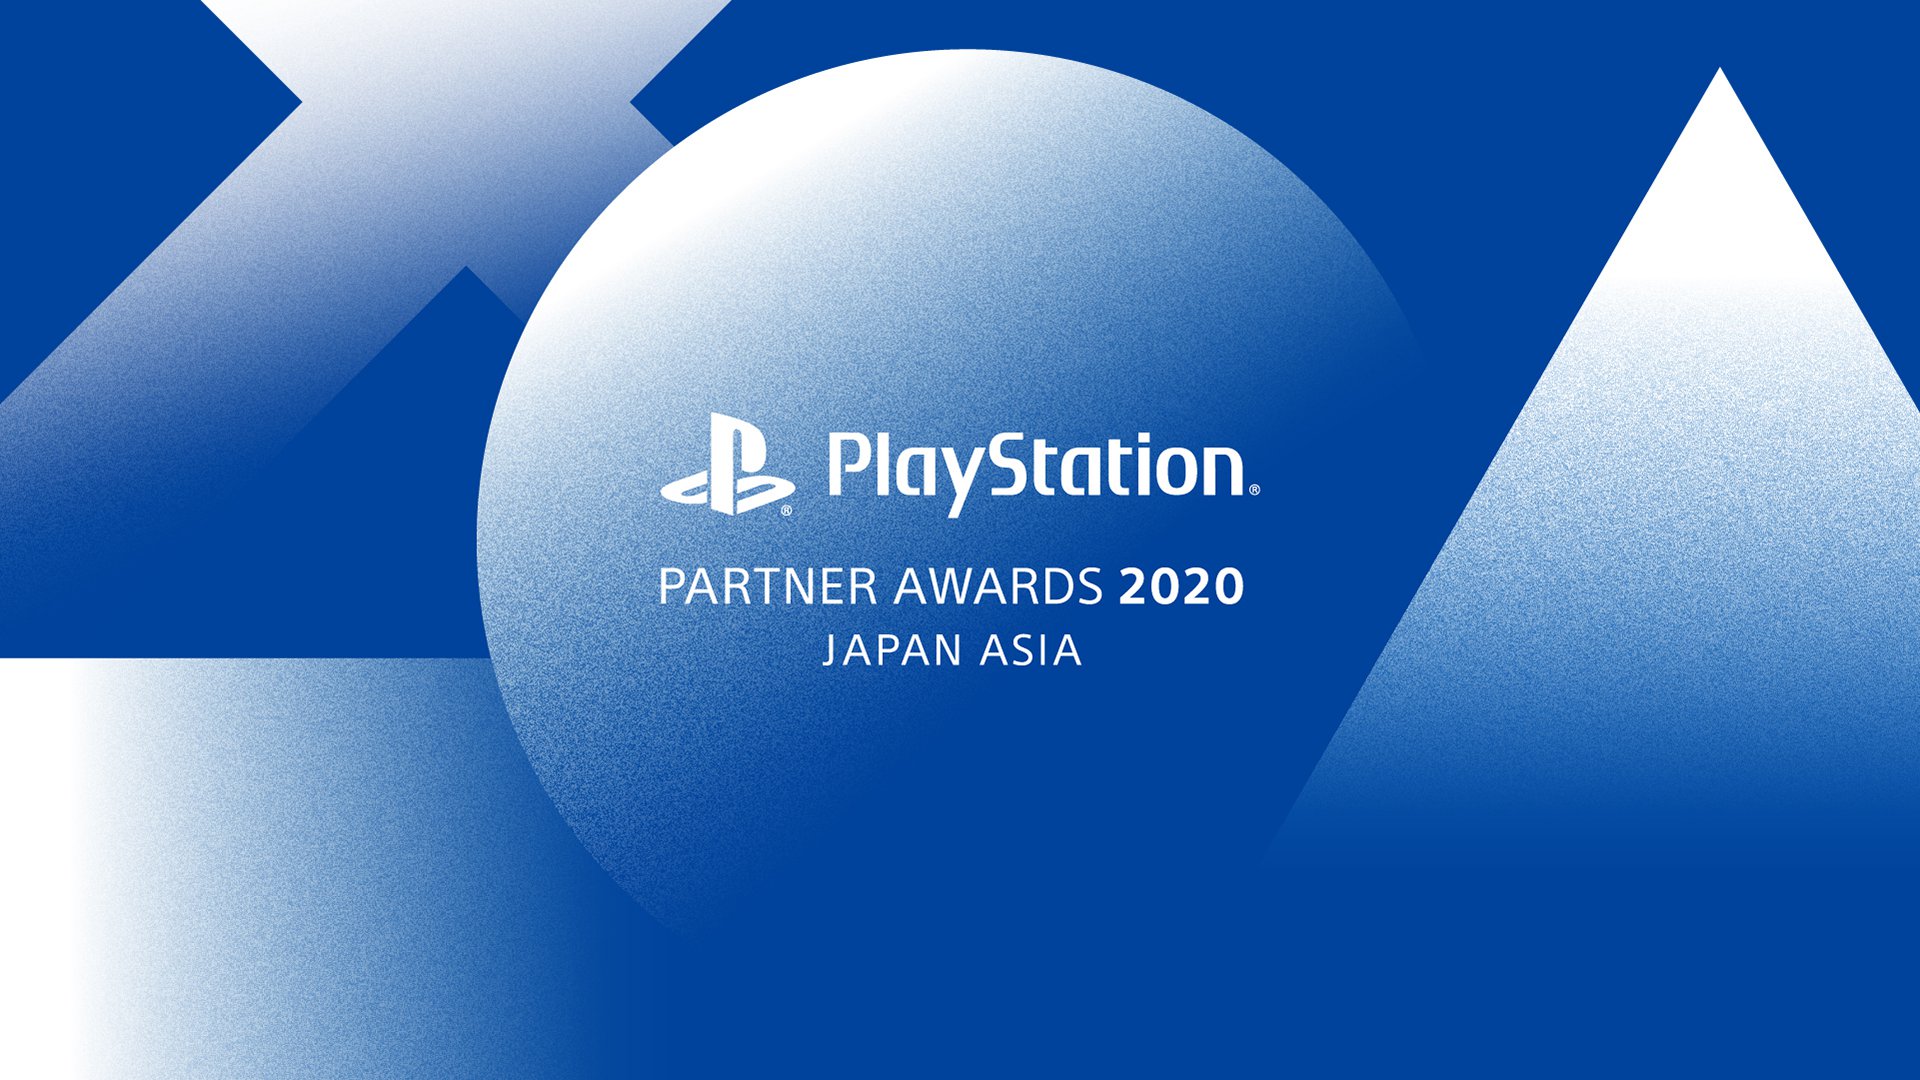 PlayStation Partner Awards 2020 Japan Asia.jpg